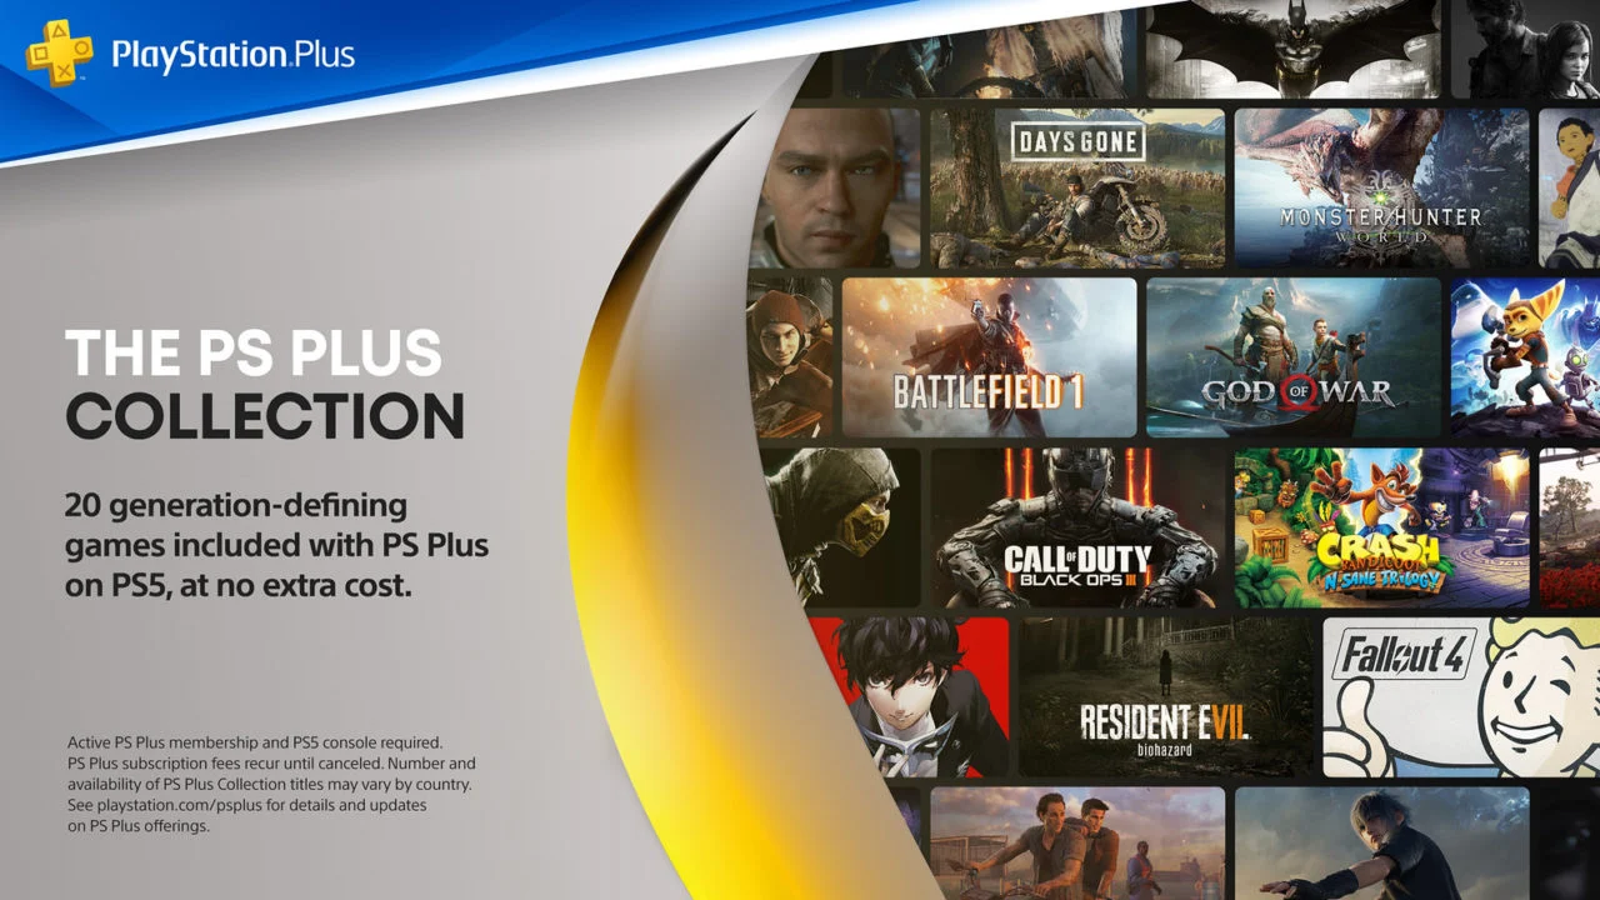 Anunciado os jogos do Playstation Plus de Fevereiro 2023